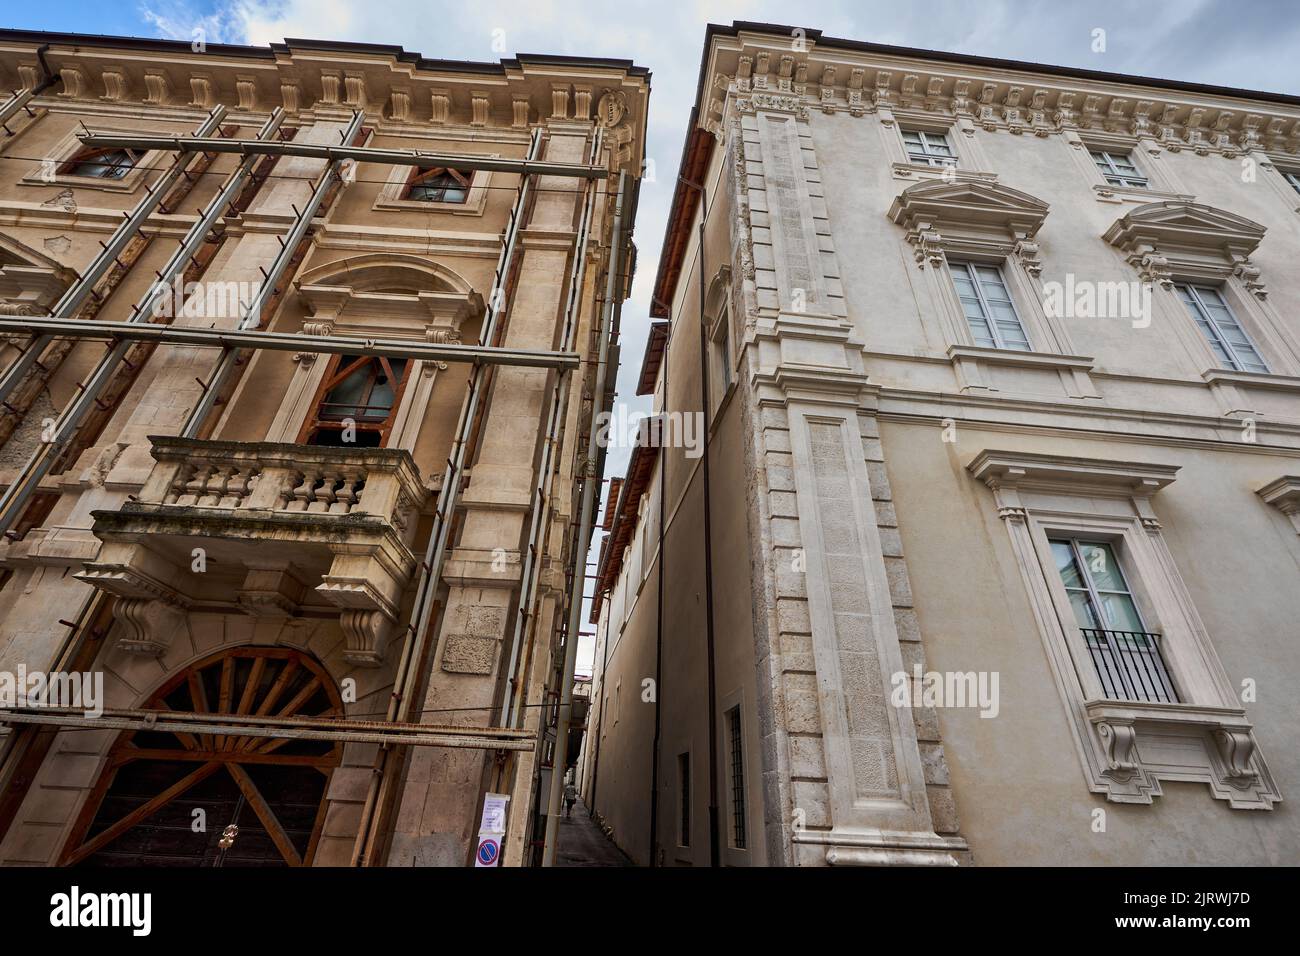 Liens Erdbeben beschädigtes und Burch Matalggerüst gesichertes Gebäude, rechts restauriertes Gebäude, l'Aquila, Abruzzen, Italien, Europe Banque D'Images